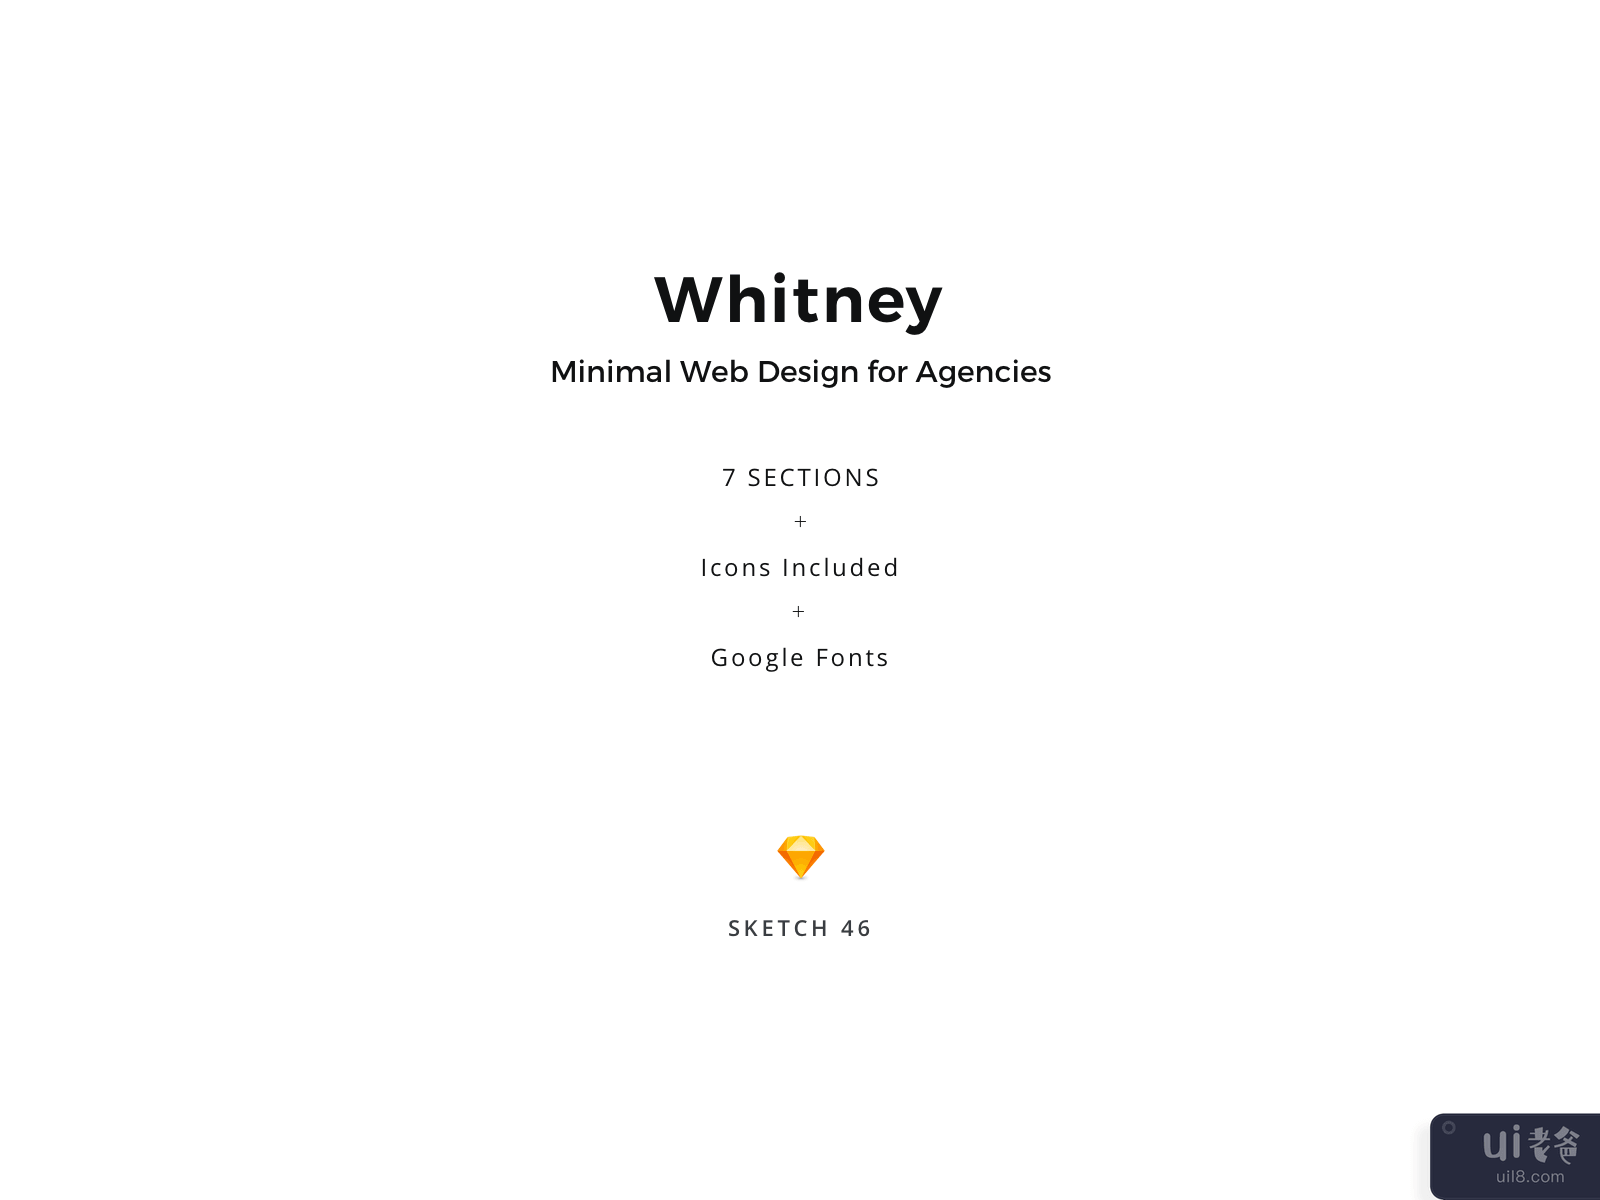 惠特尼 - 代理登陆页面(Whitney - Agency Landing Page)插图